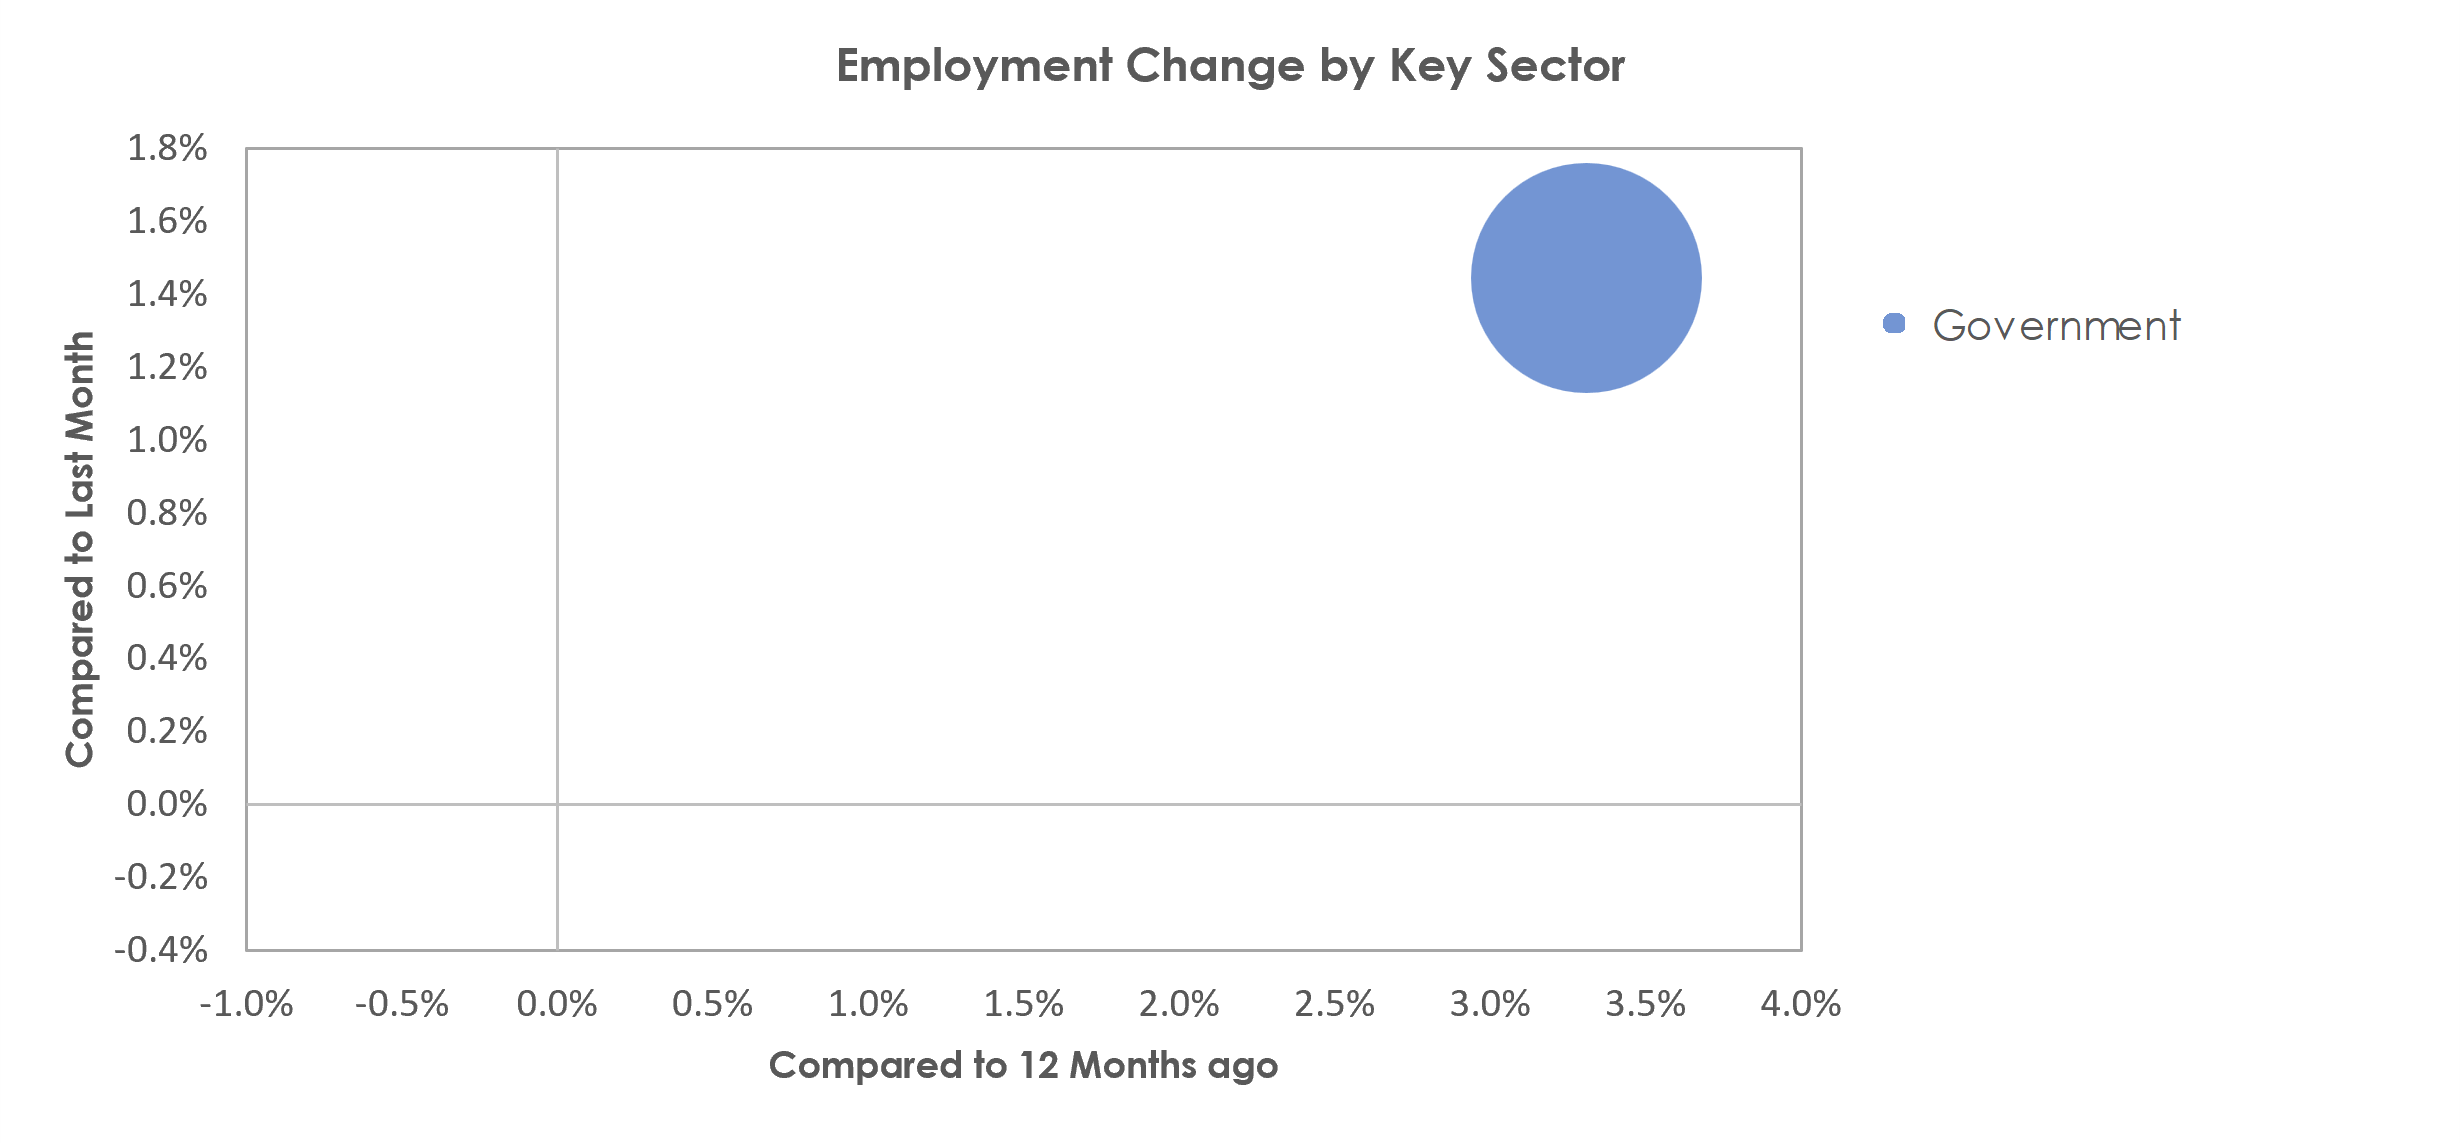 Blacksburg-Christiansburg-Radford, VA Unemployment by Industry November 2022